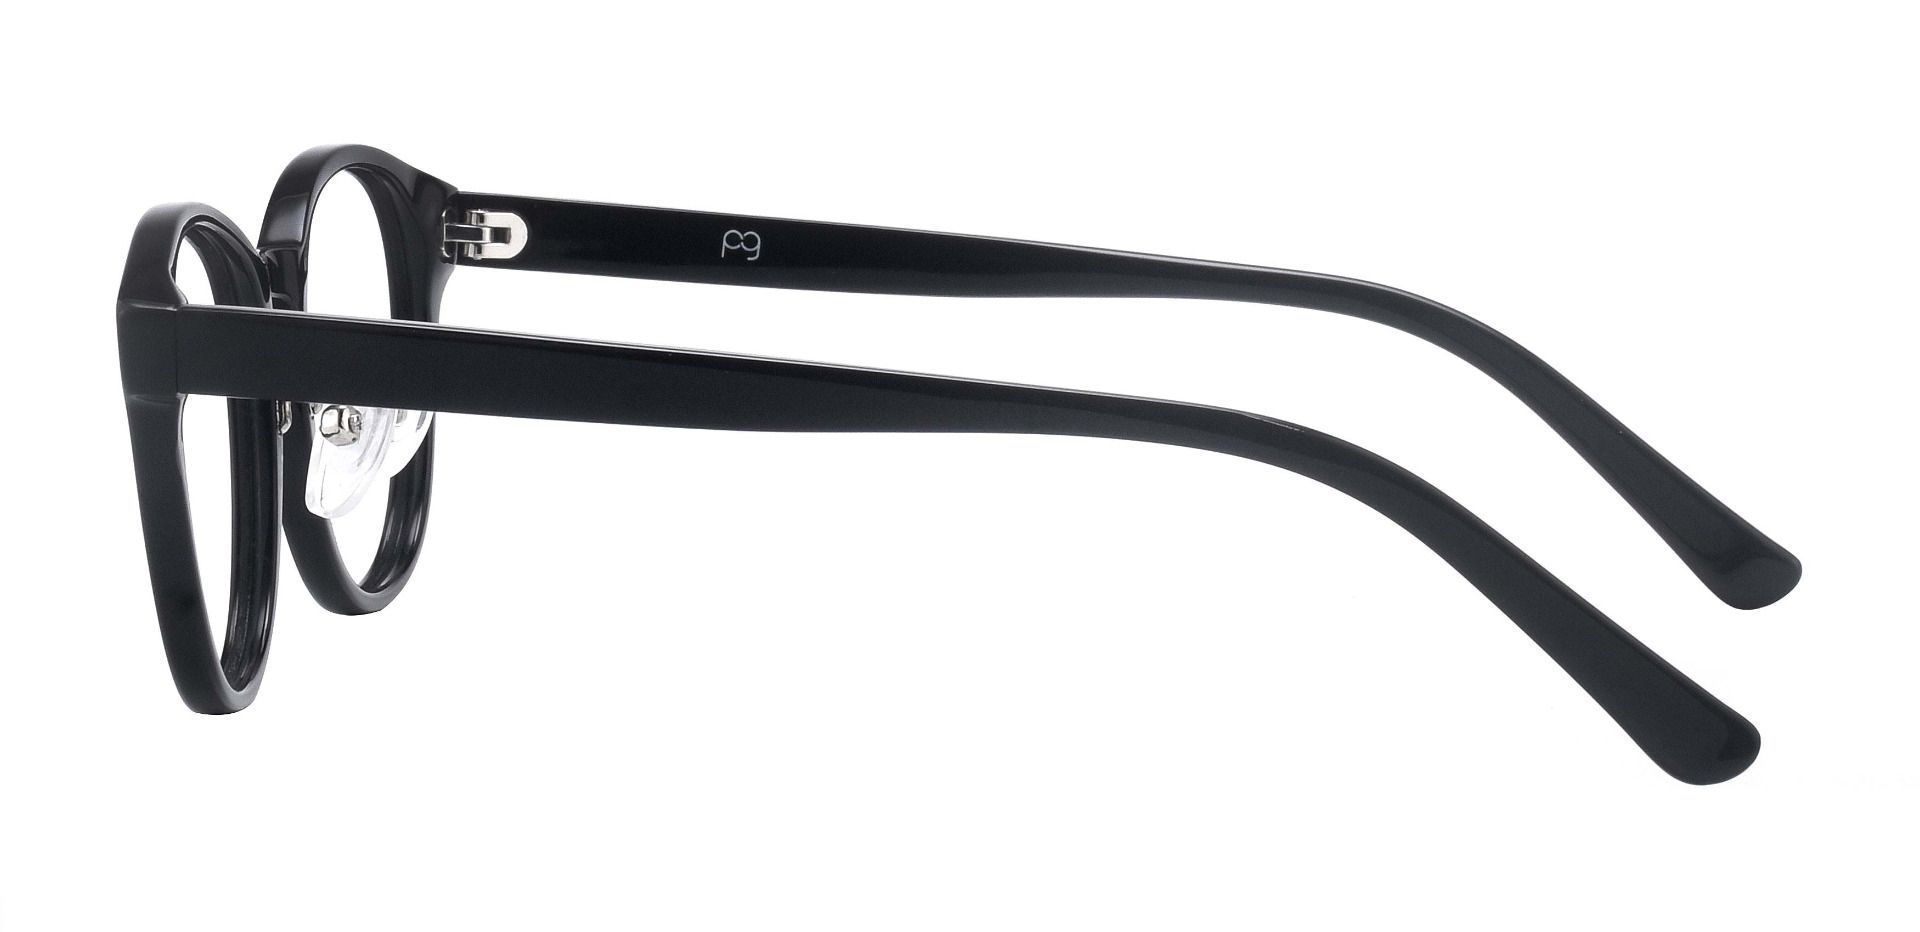 Dion Oval Non-Rx Glasses - Black